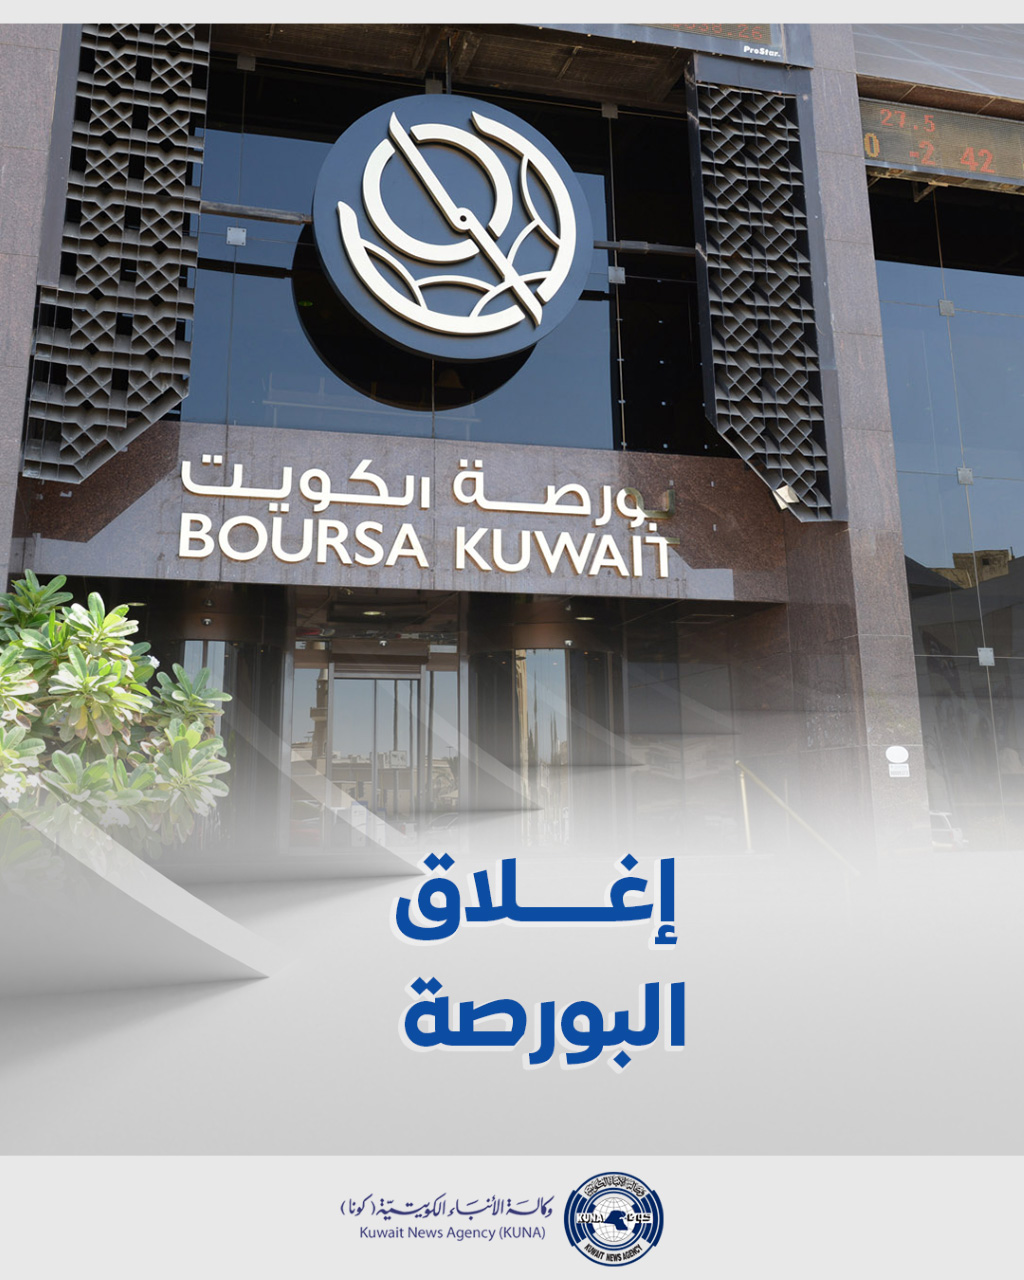 بورصة الكويت تغلق تعاملاتها على ارتفاع مؤشرها العام 6ر65 نقطة ليبلغ 32ر7402 بنسبة 89ر0 في المئة                                                                                                                                                           